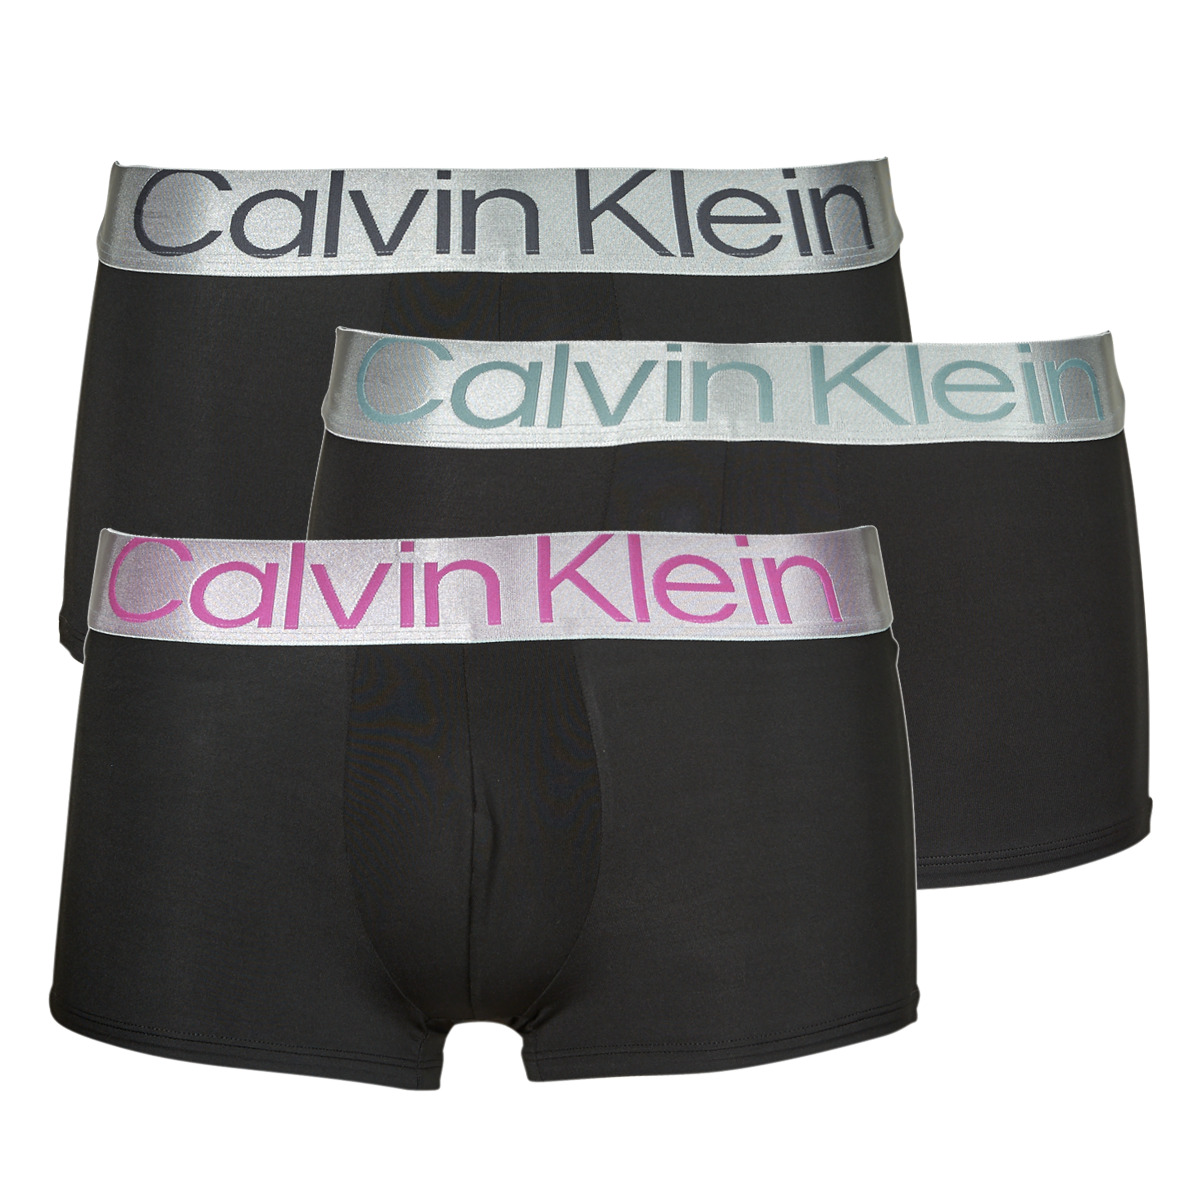 Calvin Klein Jeans Noir / Noir / Noir LOW RISE TRUNK X3